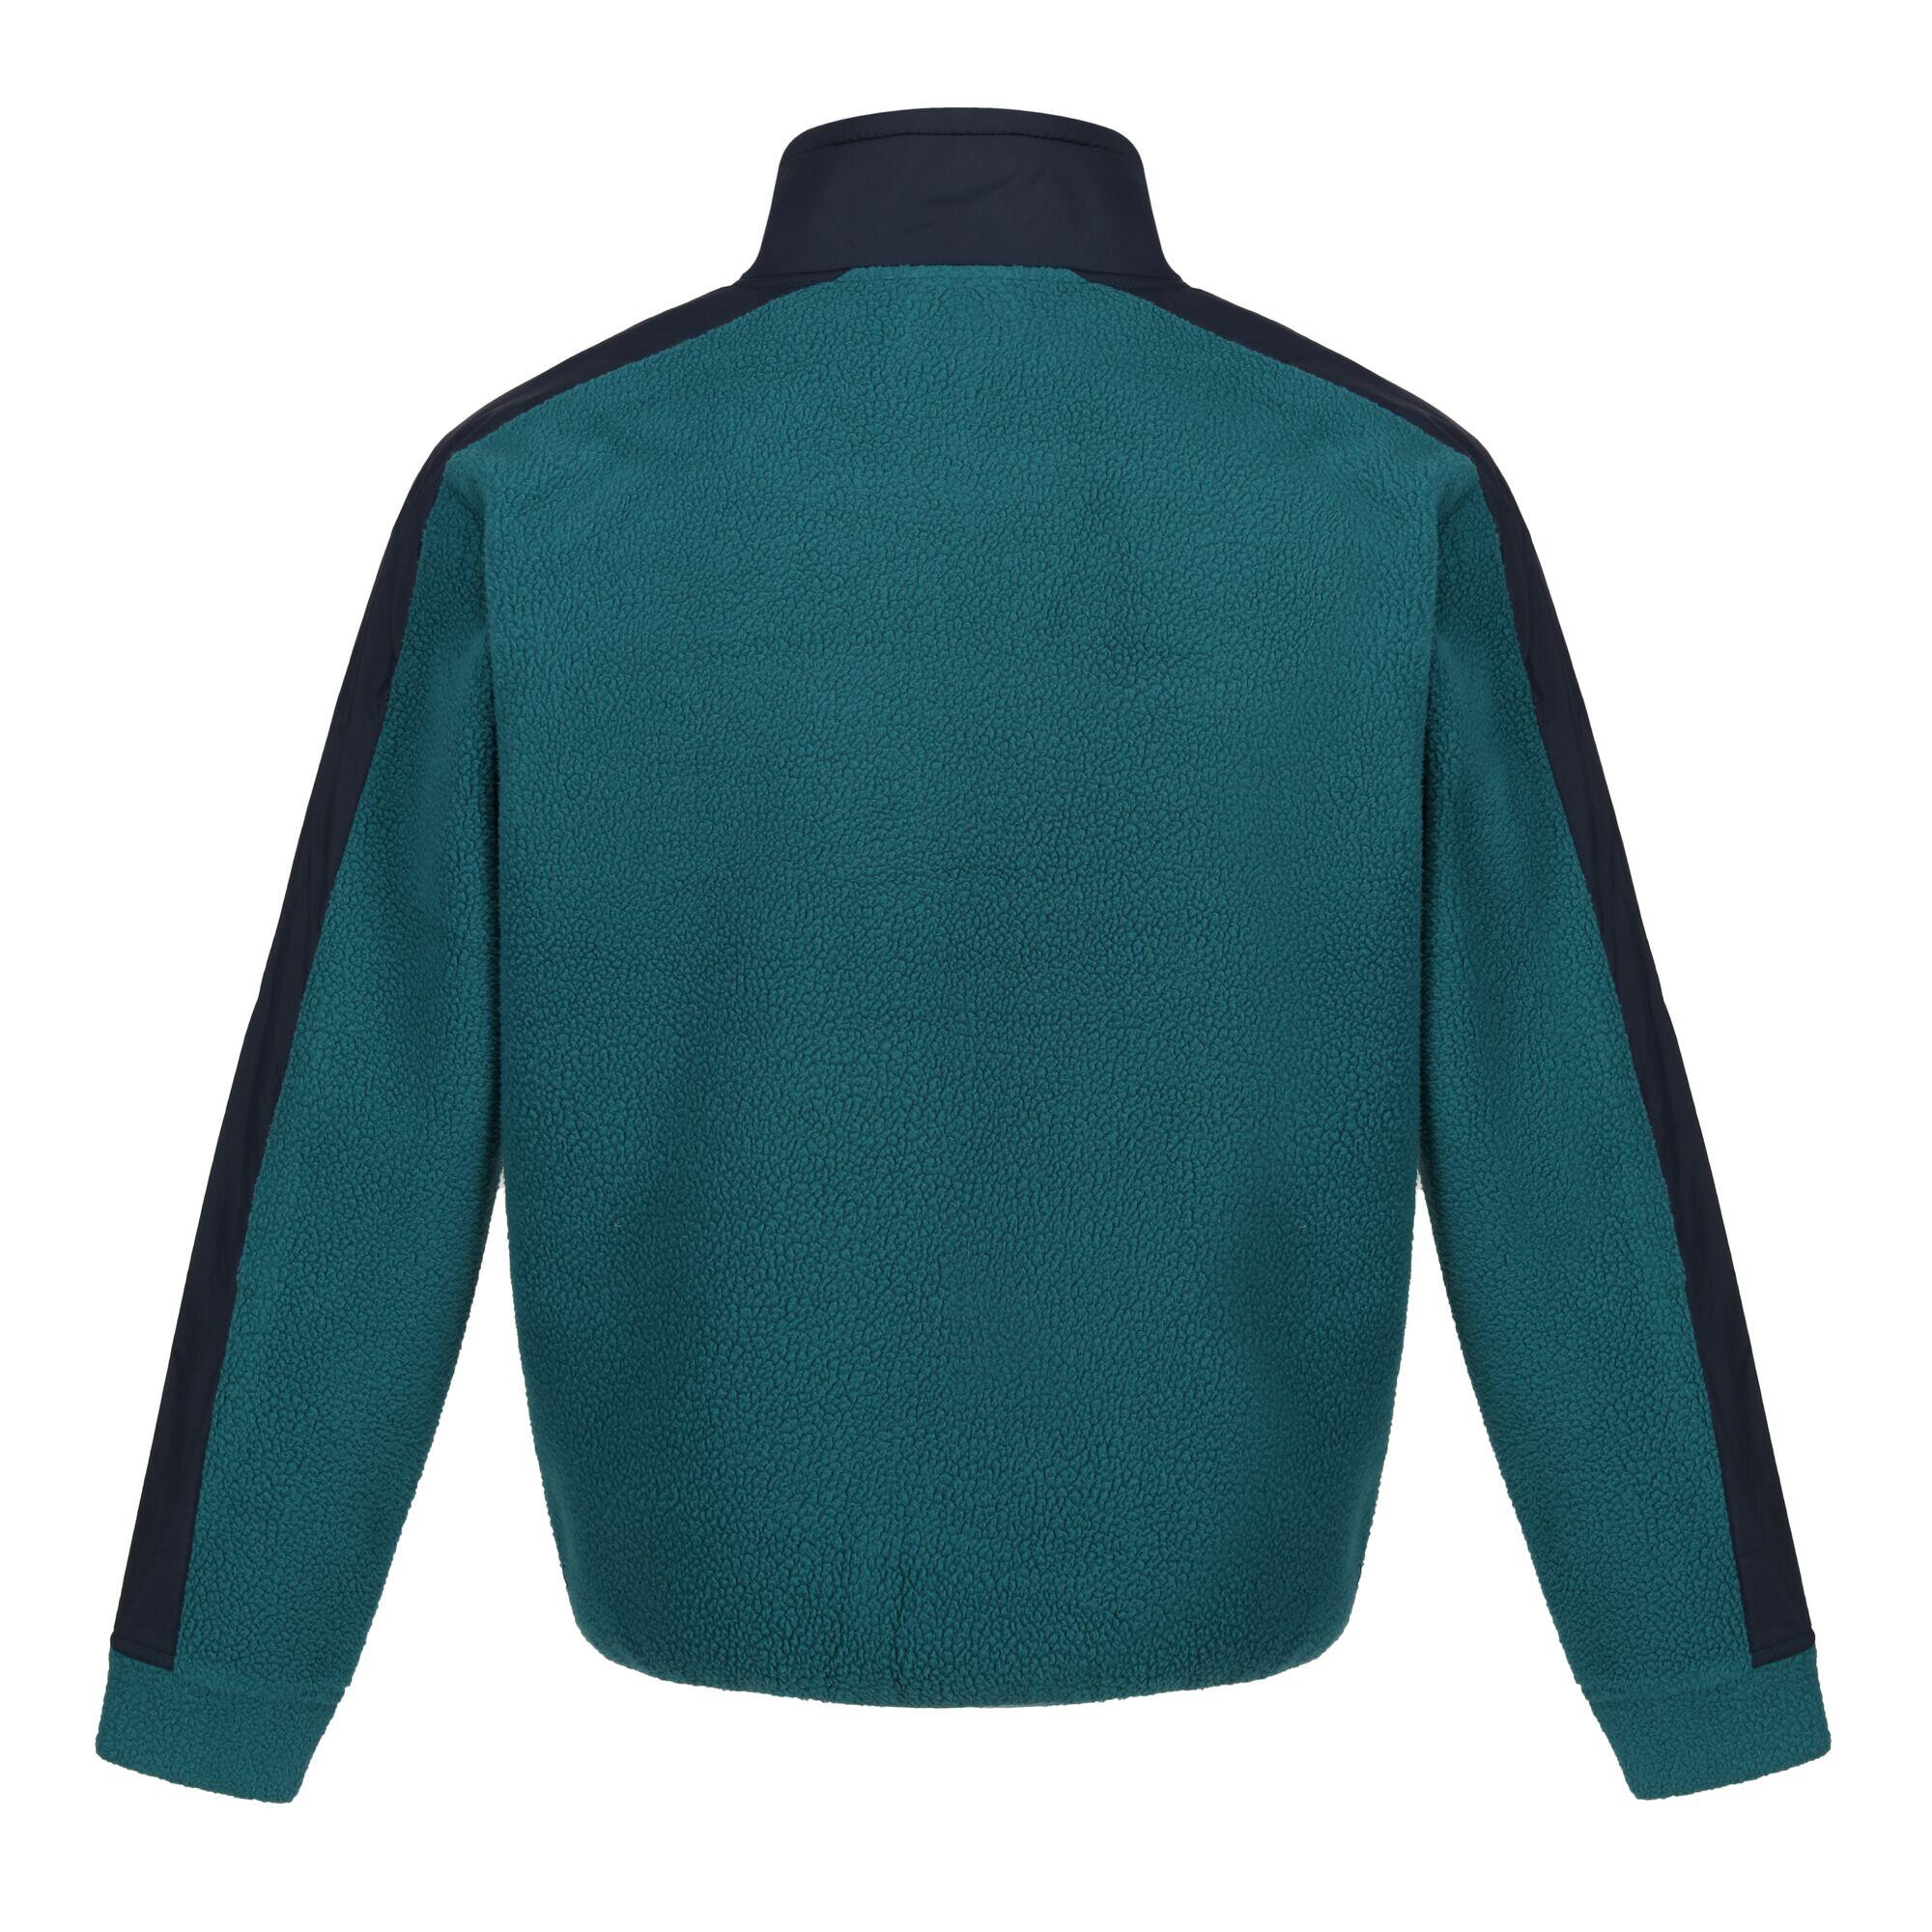 Mens Vintage Fleece Top (Spruce Green/Navy) 2/5